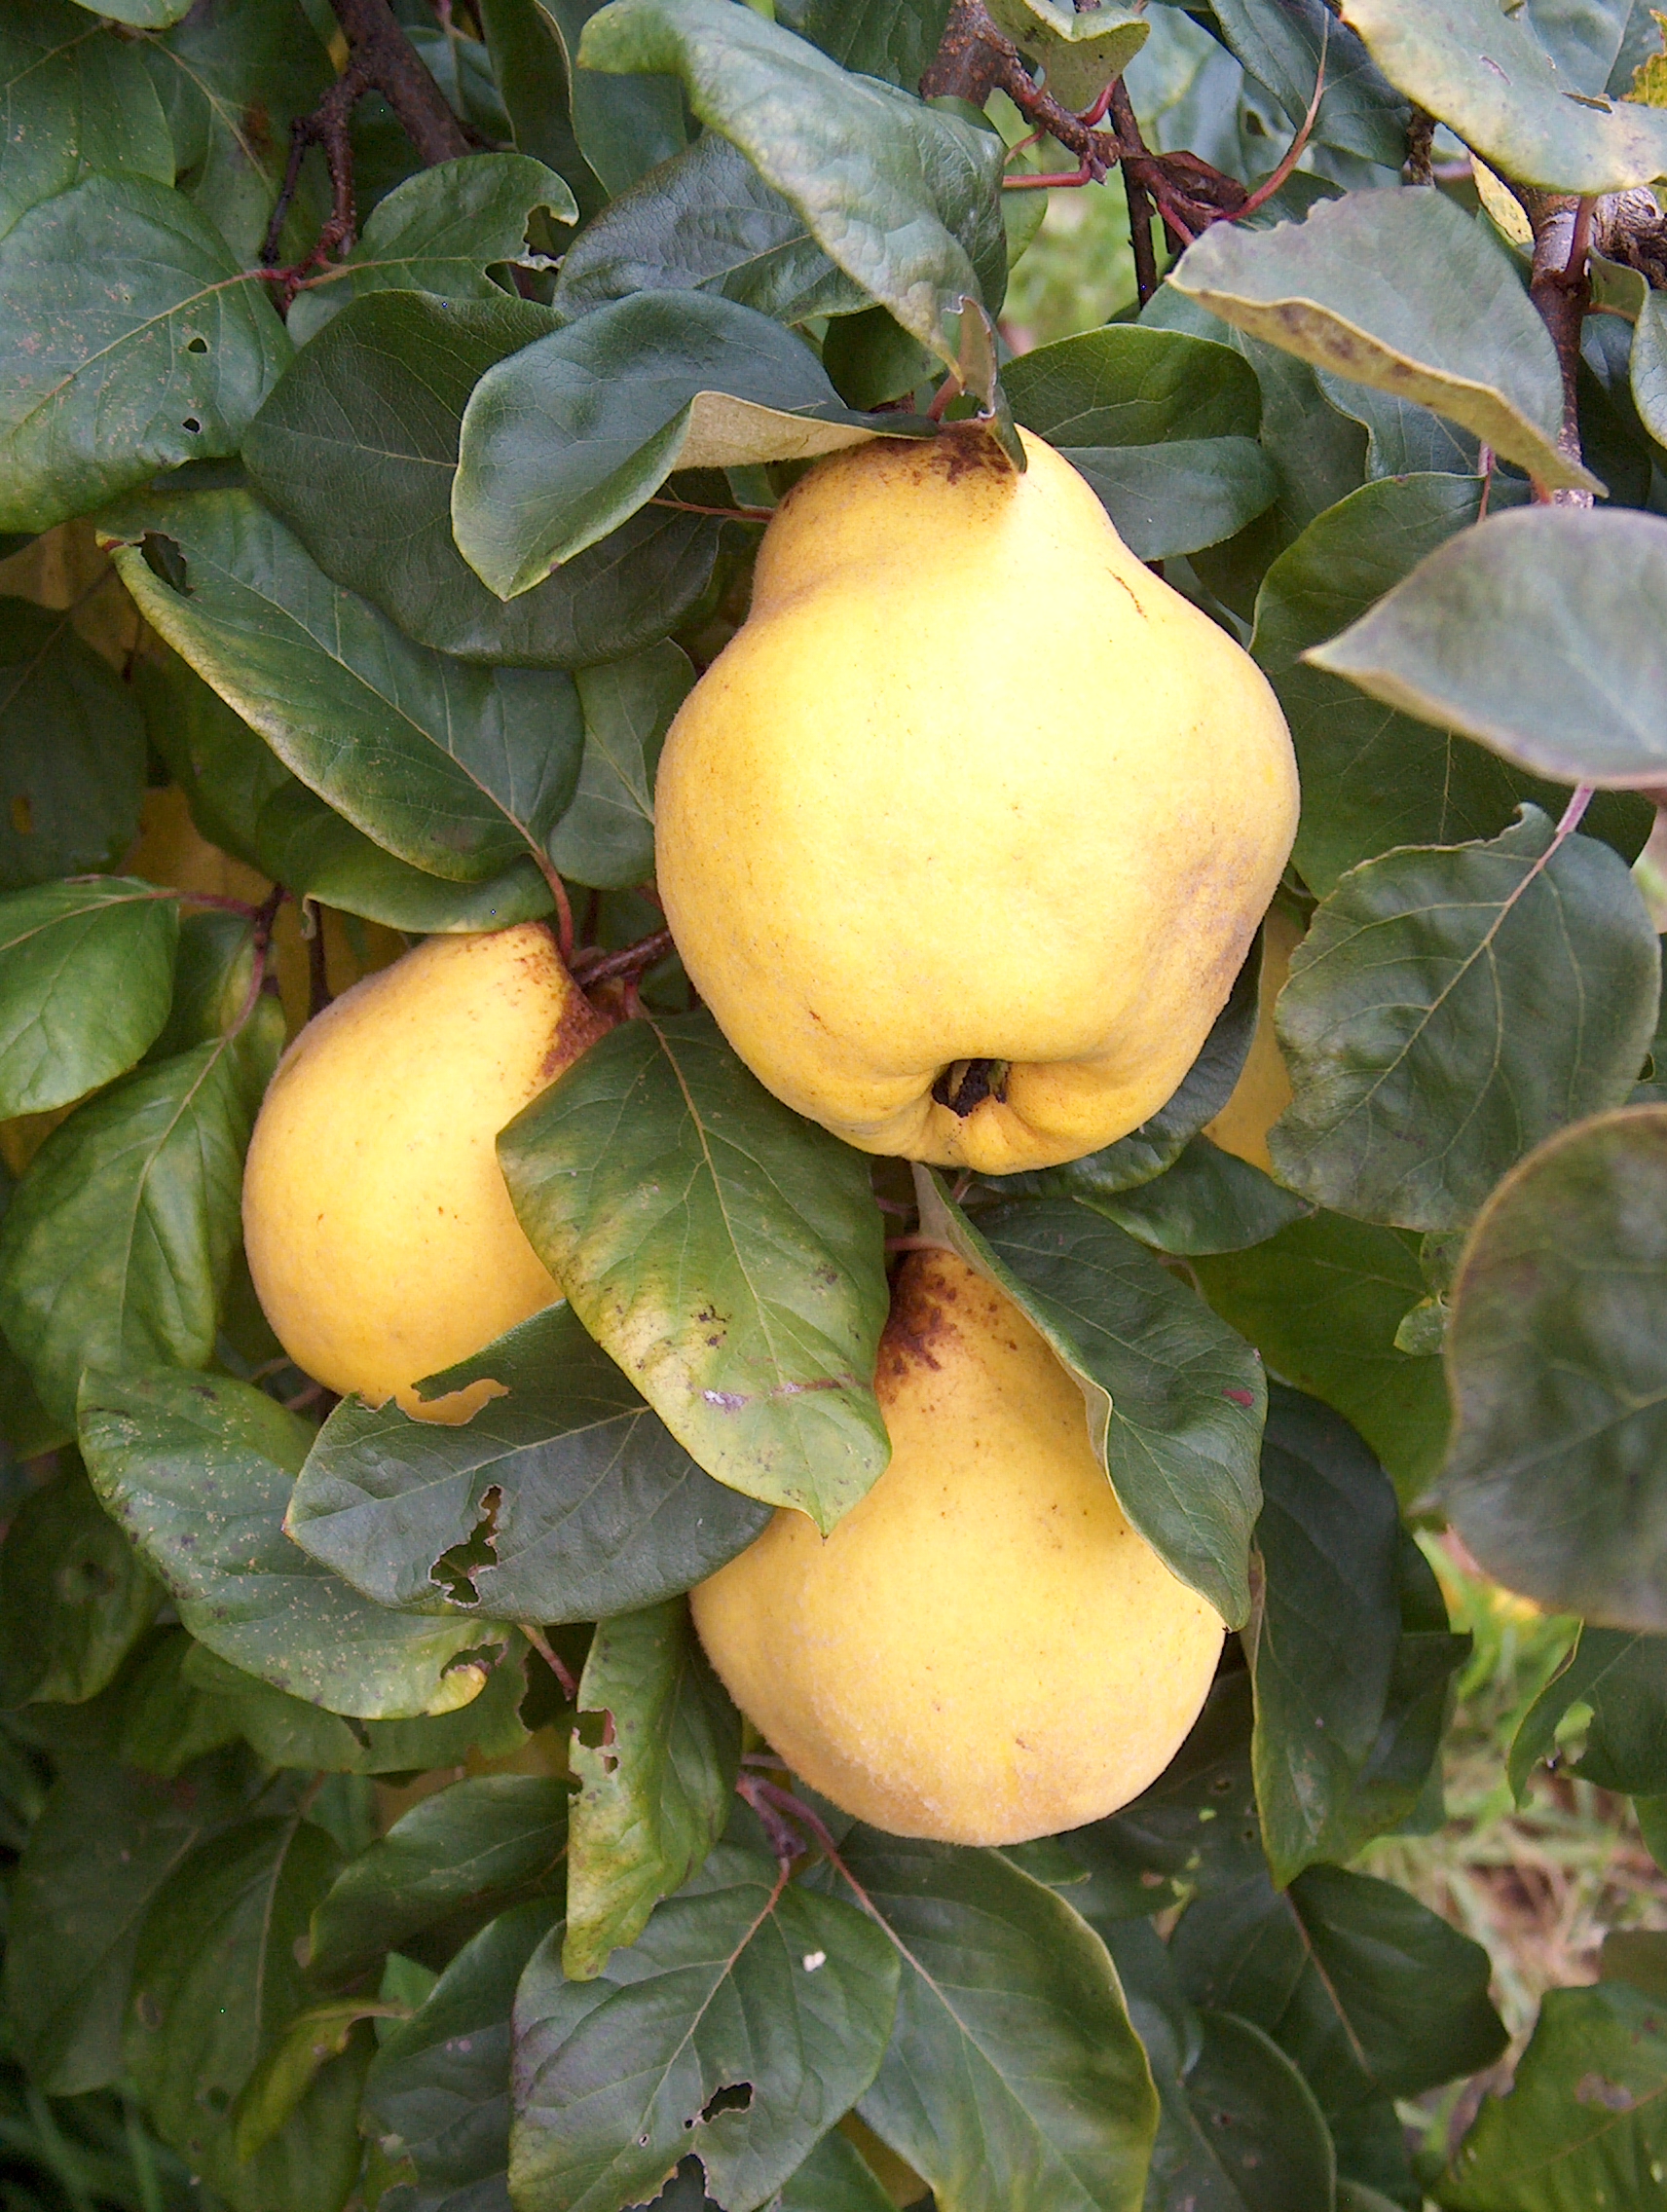 Cumpărați pomi fructiferi organici din Marea Britanie